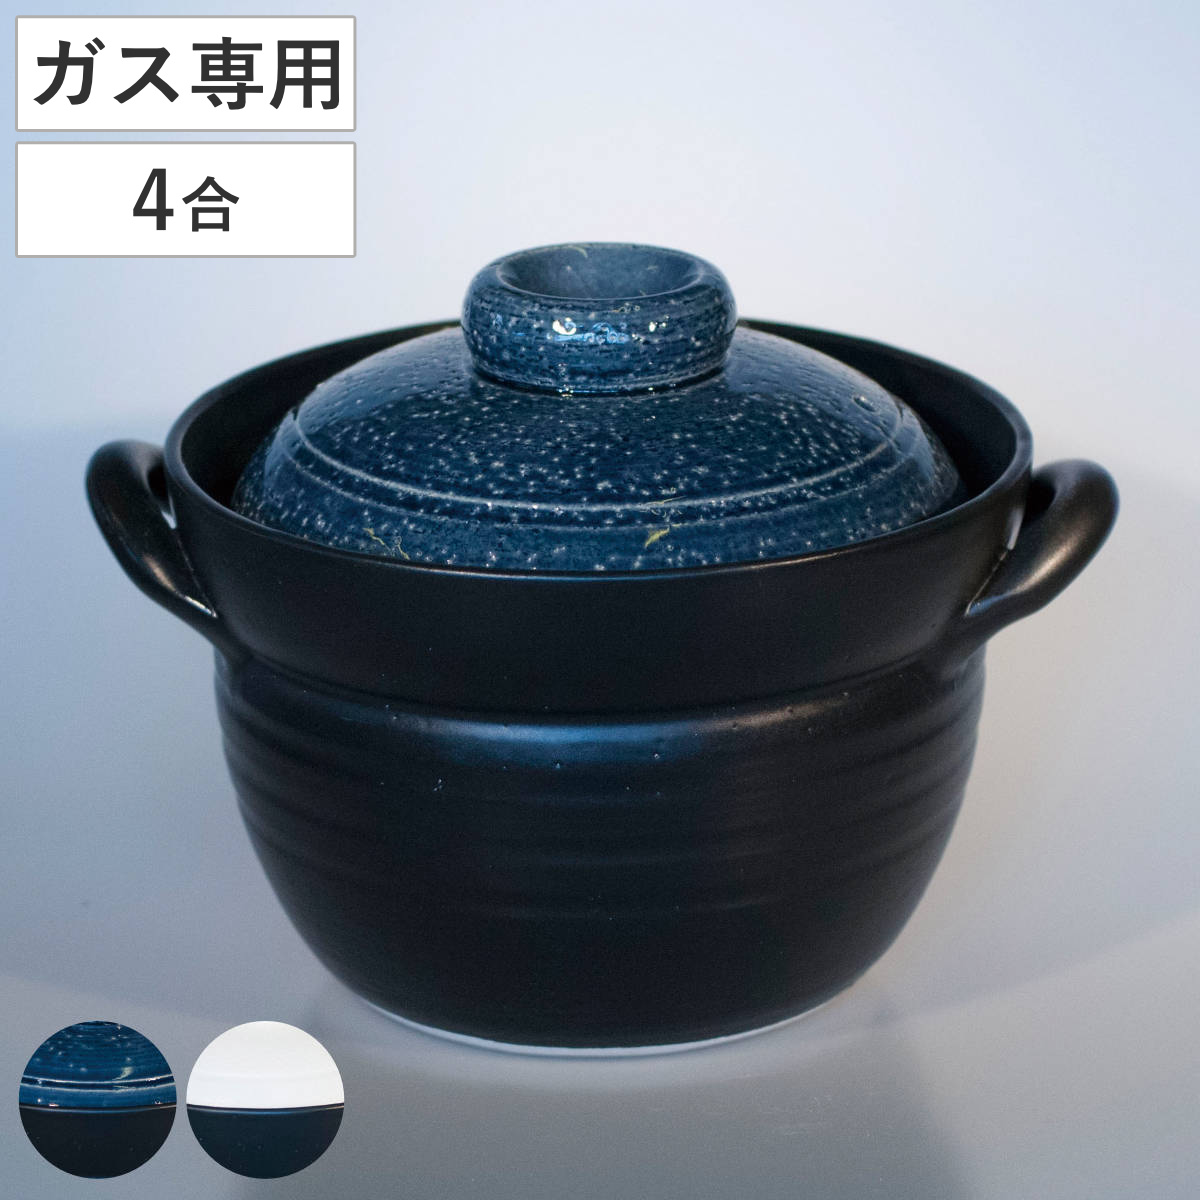 炊飯土鍋 4合炊 直火専用 ふっくらごはん鍋 二重蓋 萬古焼 日本製 